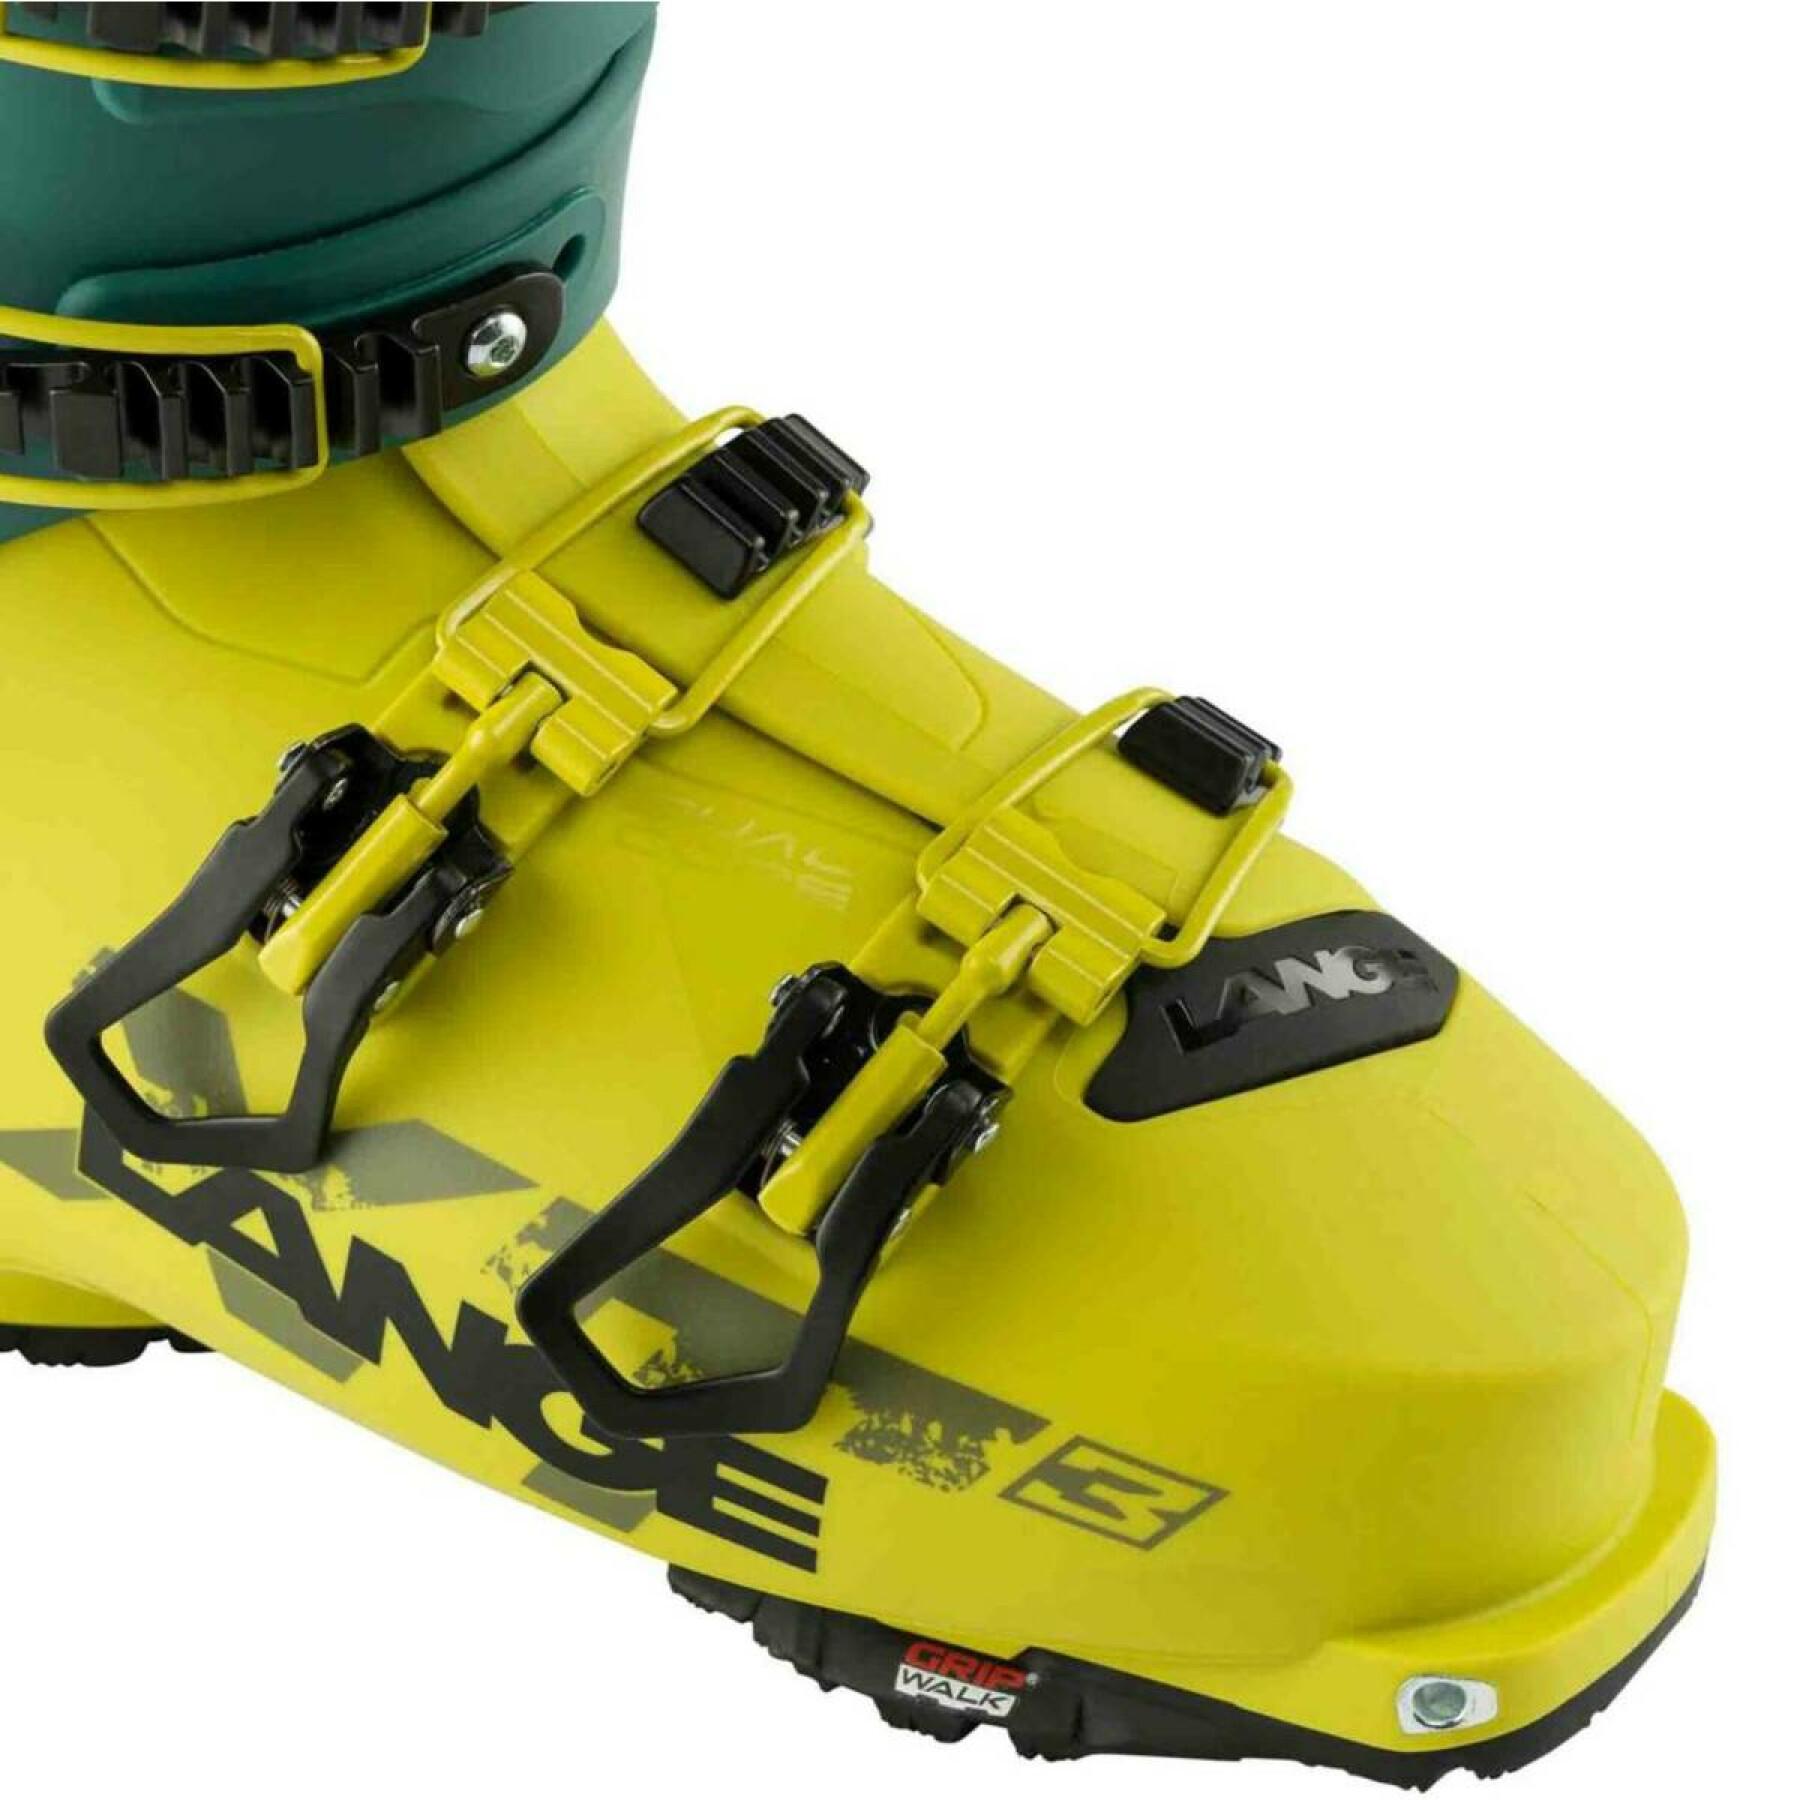 Chaussures de ski Lange xt3 110 gw